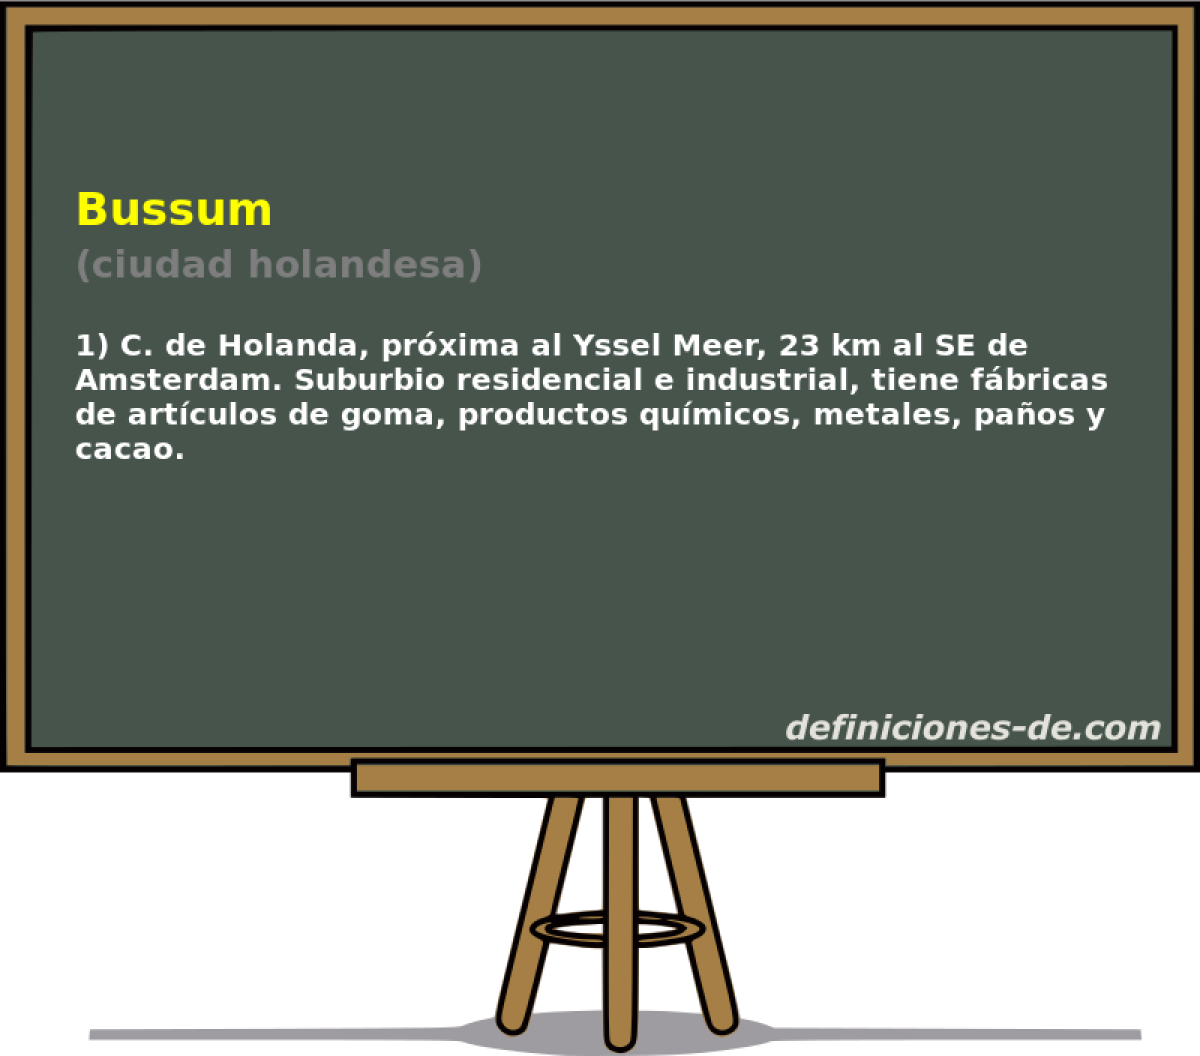 Bussum (ciudad holandesa)